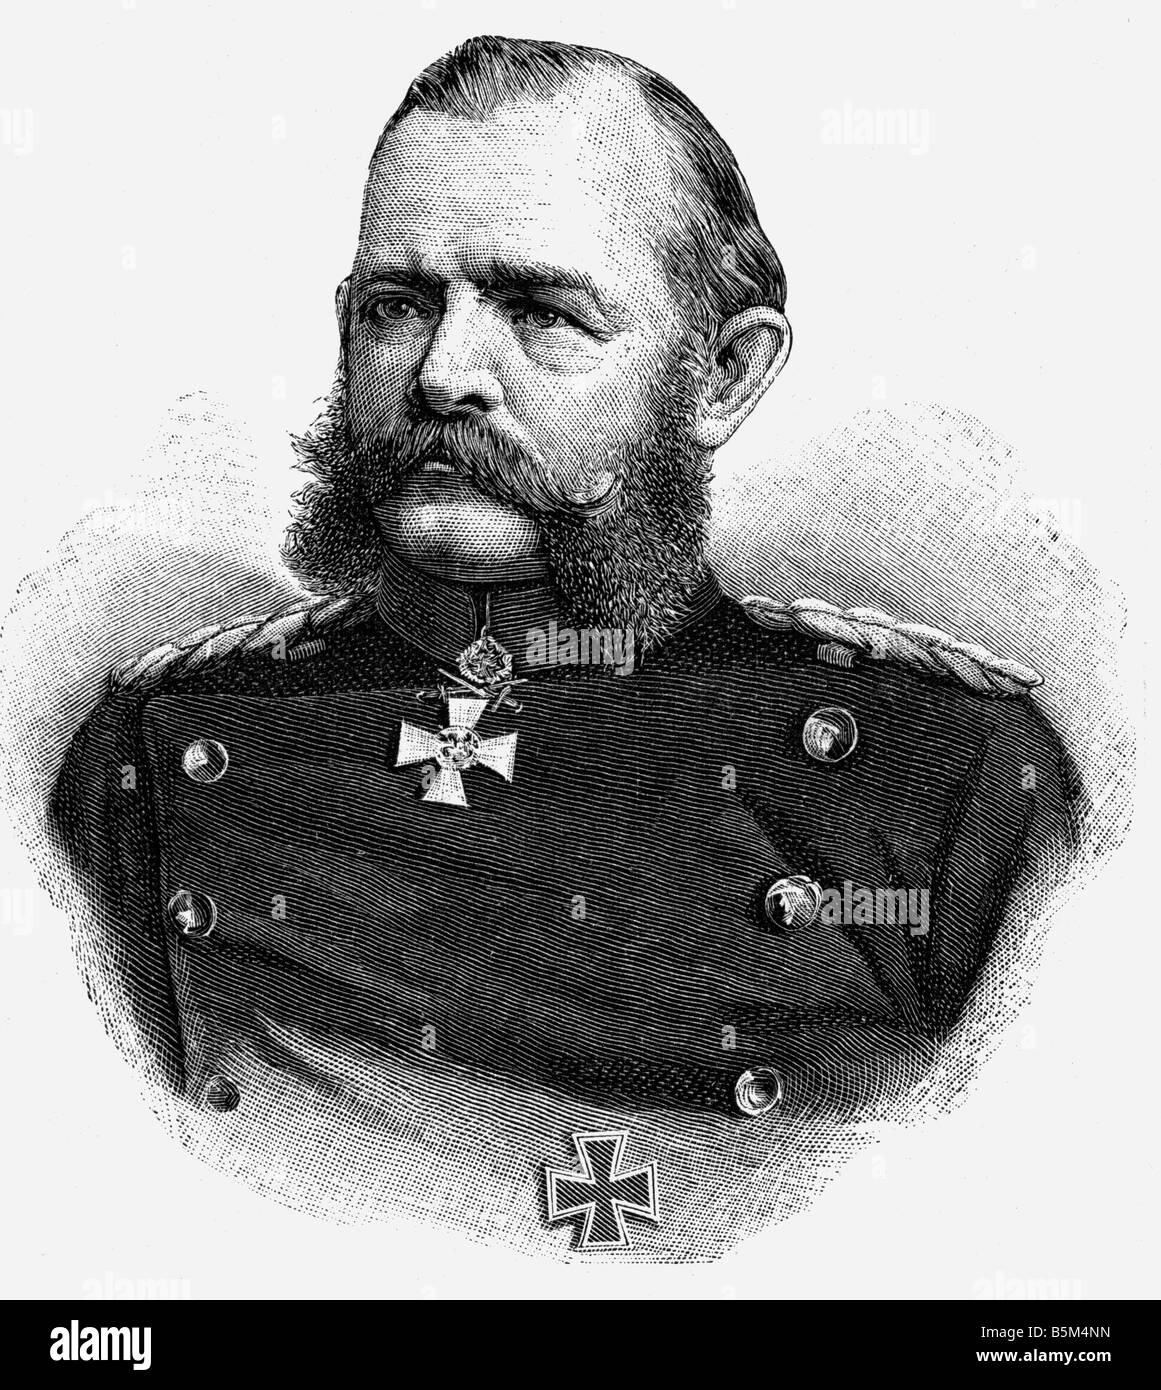 Heuduck, Wilhelm von, 5.4.1821 - 20.11.1899, général allemand de cavalerie, portrait, gravure sur bois, XIXe siècle, Banque D'Images